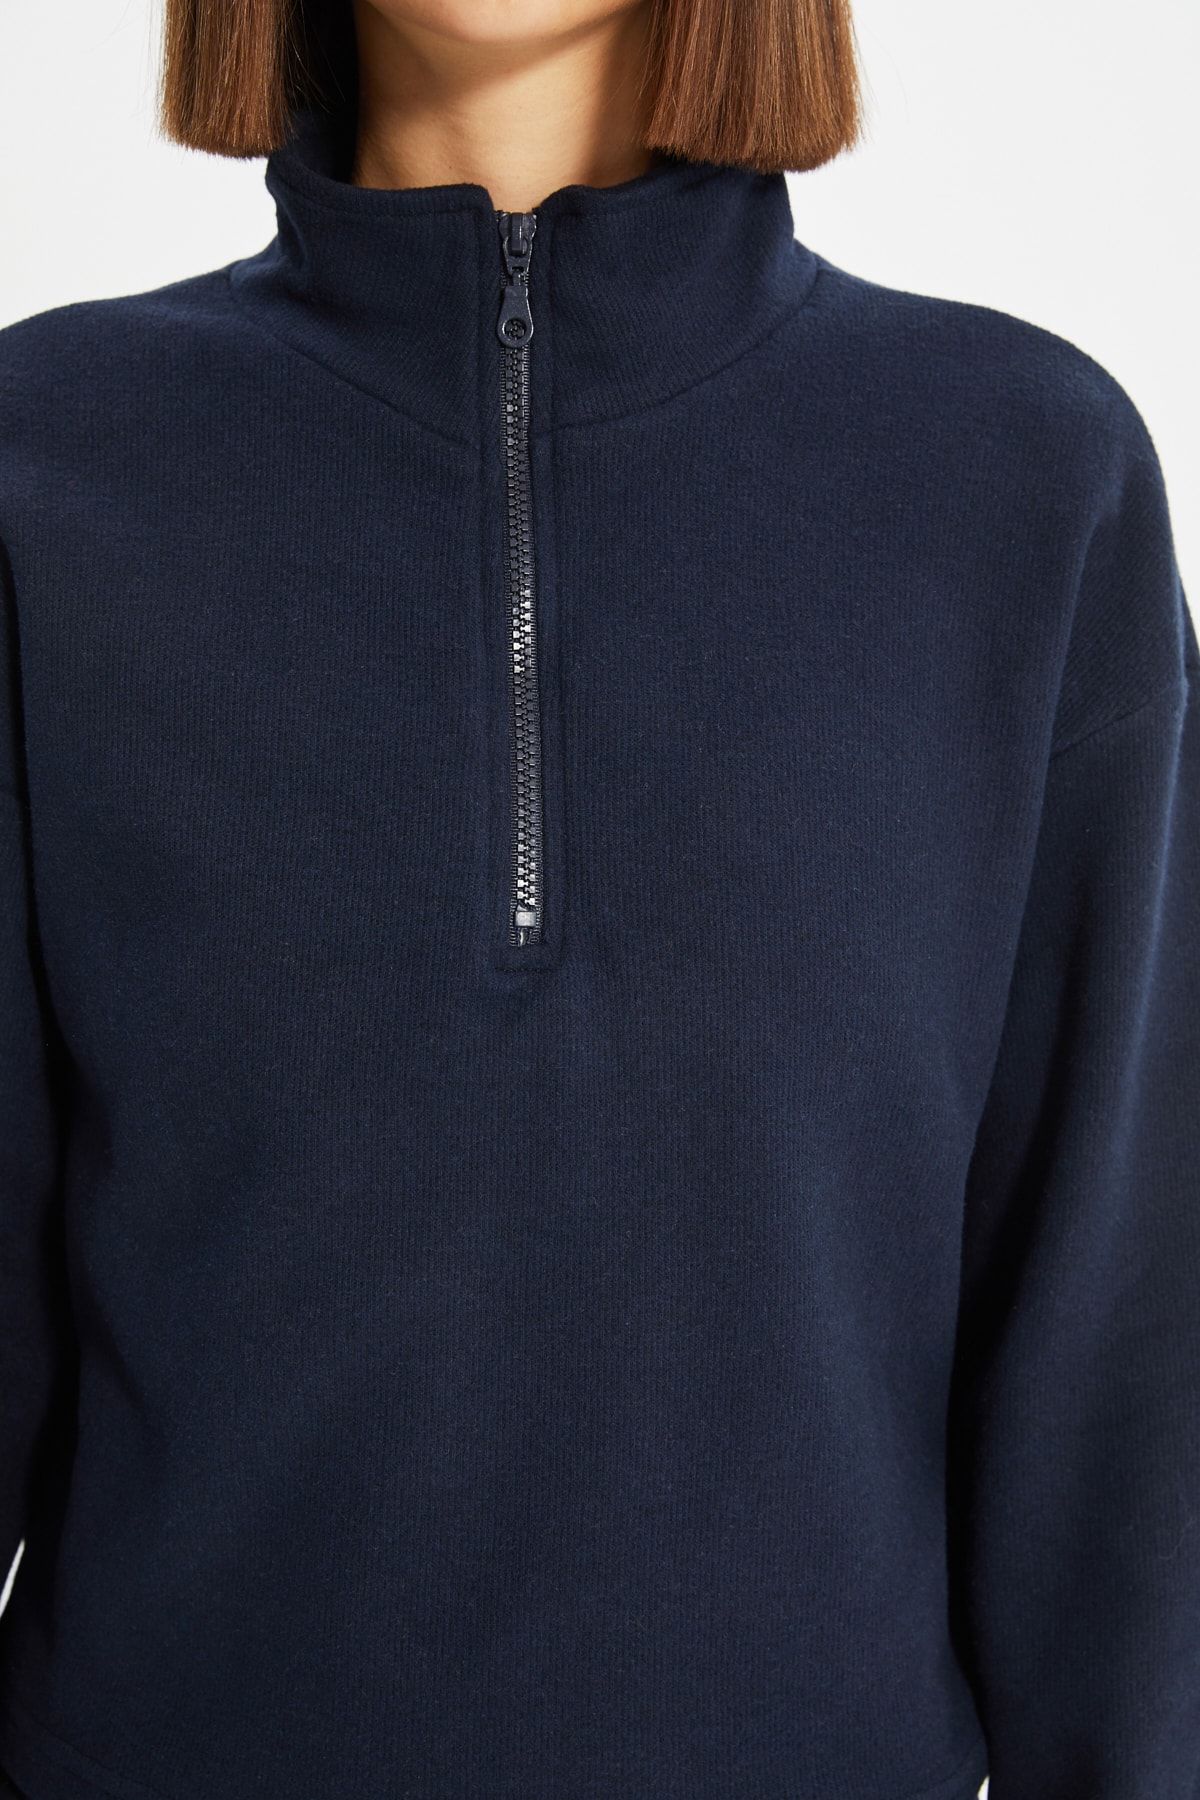 Trendyol Collection Sweatshirt - Dark blue - Regular fit - Trendyol